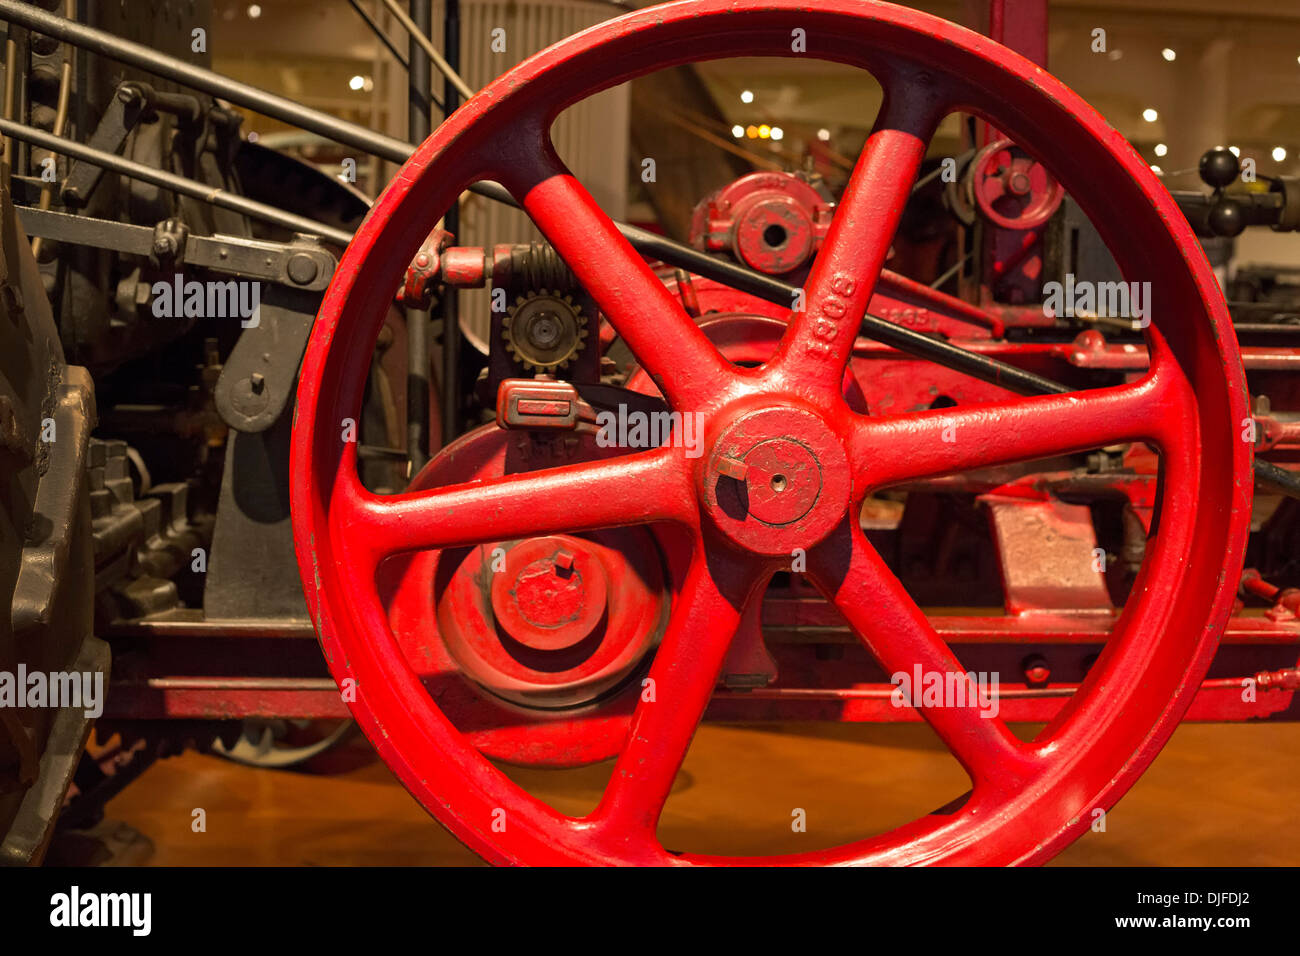 Dearborn, Michigan - Detalle de un motor de tracción de vapor en el Henry Ford Museum. Fue usado para arar las grandes fincas alrededor de 1916. Foto de stock